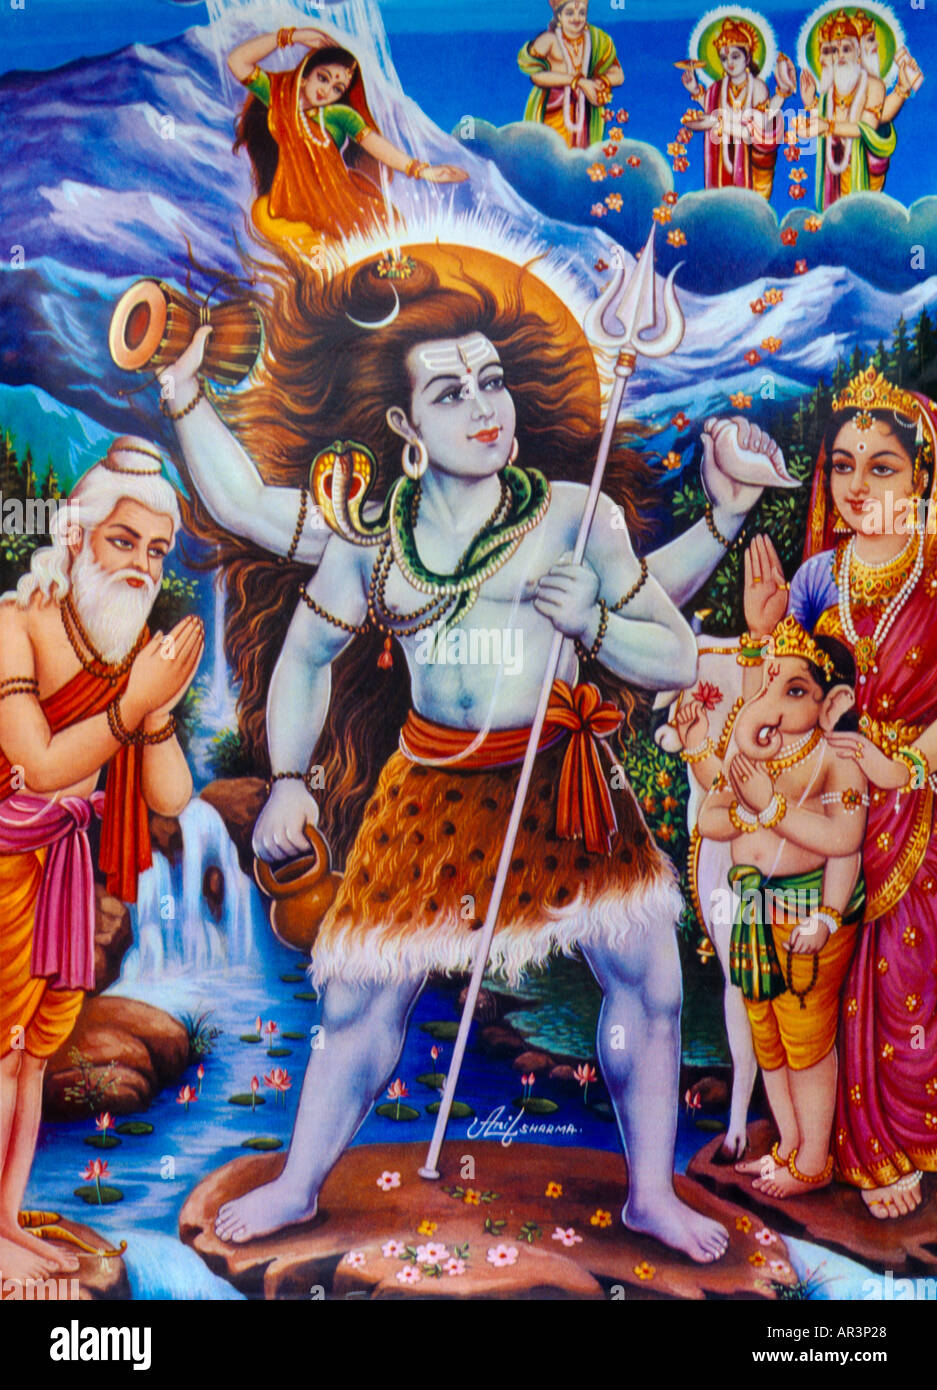 Shiva & der Ganges (Ganga) Hindu Gott des Lebens mit Cobra Tod und Wiedergeburt Brahma Praying & Ganges auf dem Kopf Stockfoto